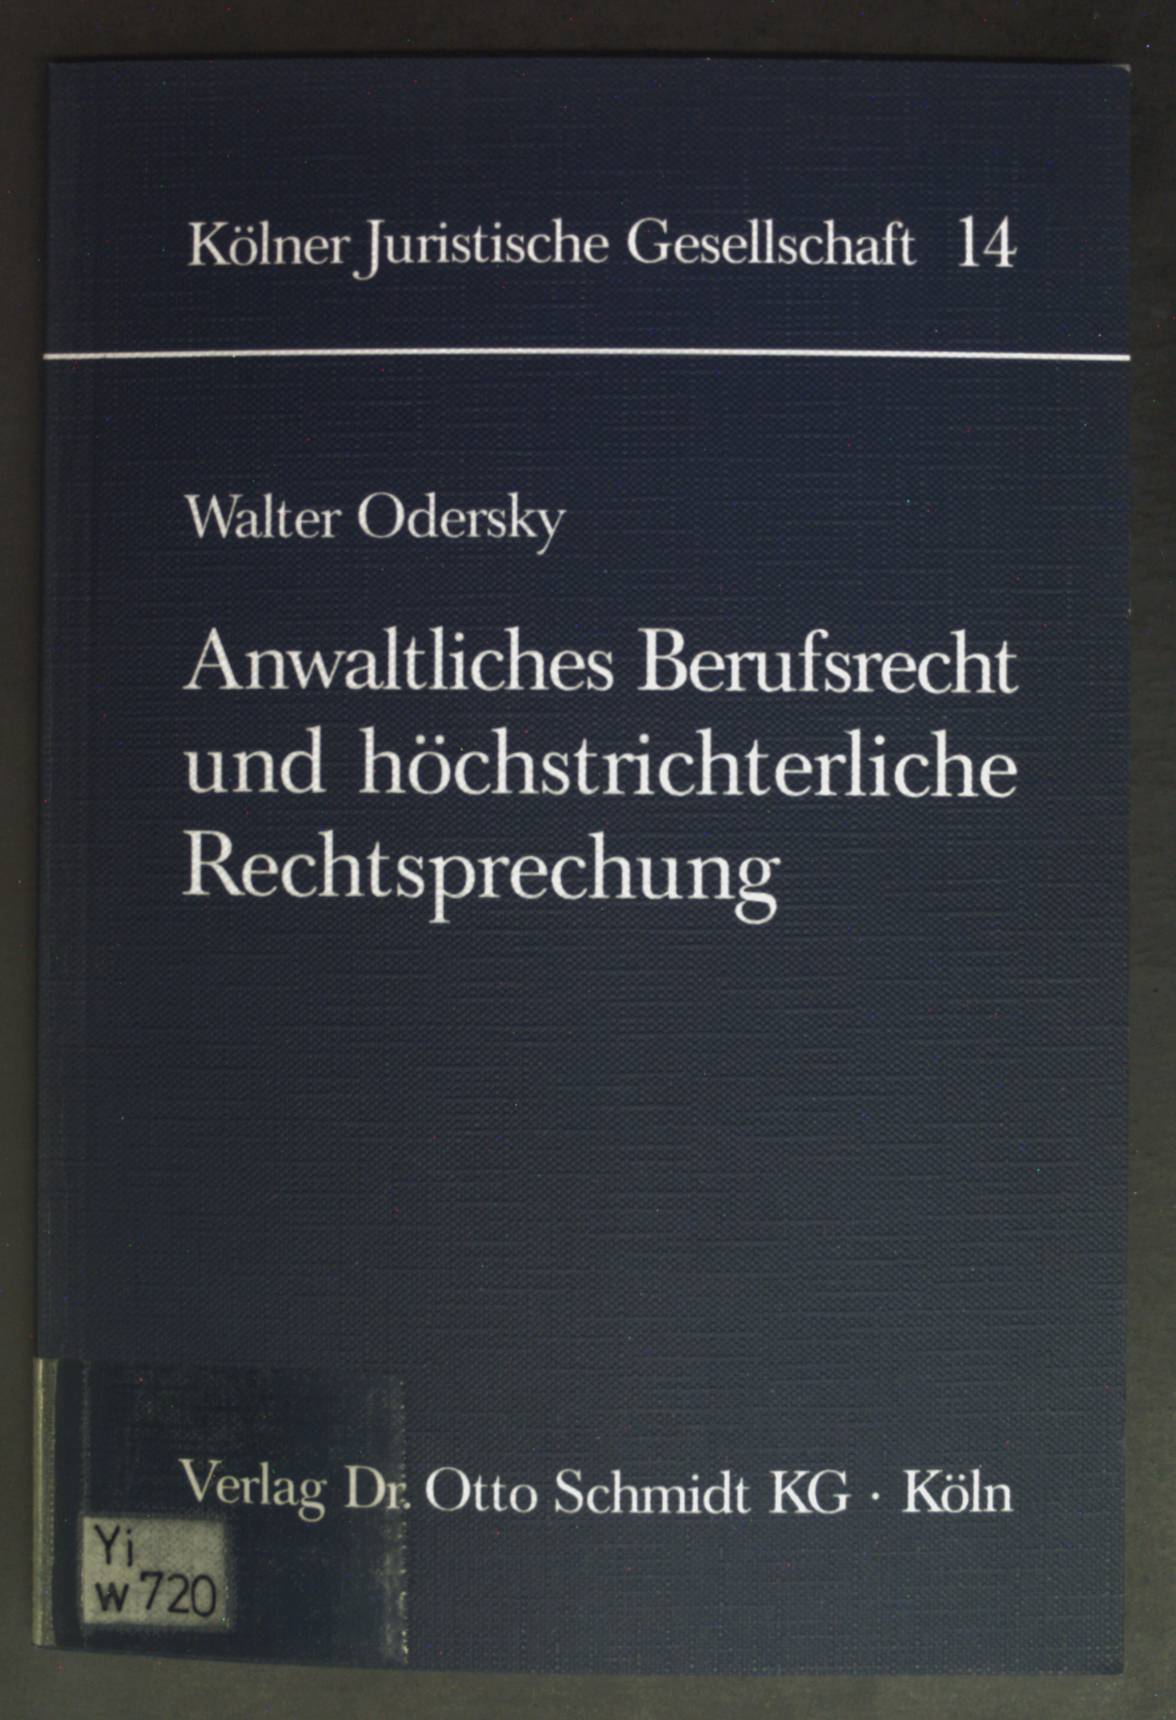 Anwaltliches Berufsrecht und höchstrichterliche Rechtsprechung. Schriftenreihe der Kölner Juristischen Gesellschaft ; Bd. 14. - Odersky, Walter